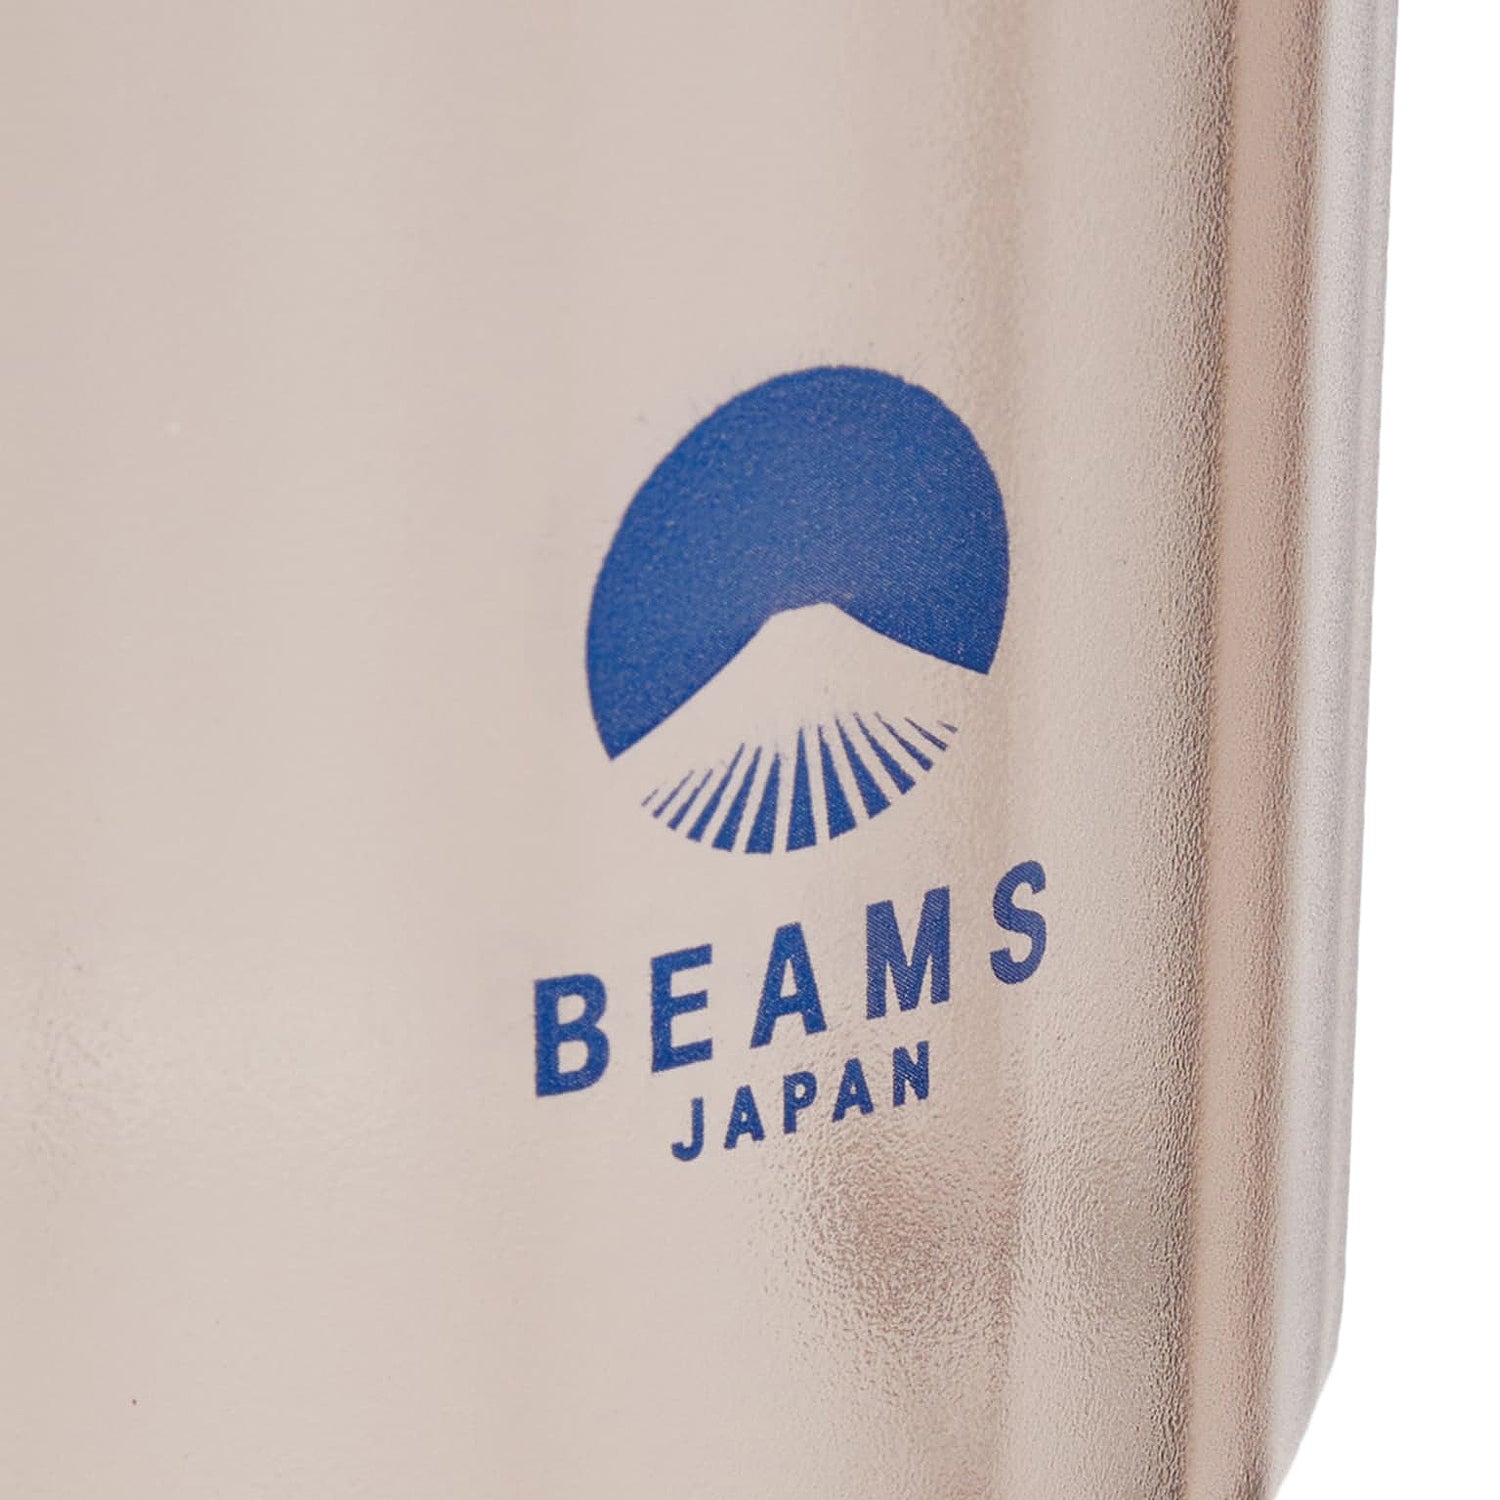 [BEAMS JAPAN] LOGO TRITAN STACKING TUMBLER _ BLUE